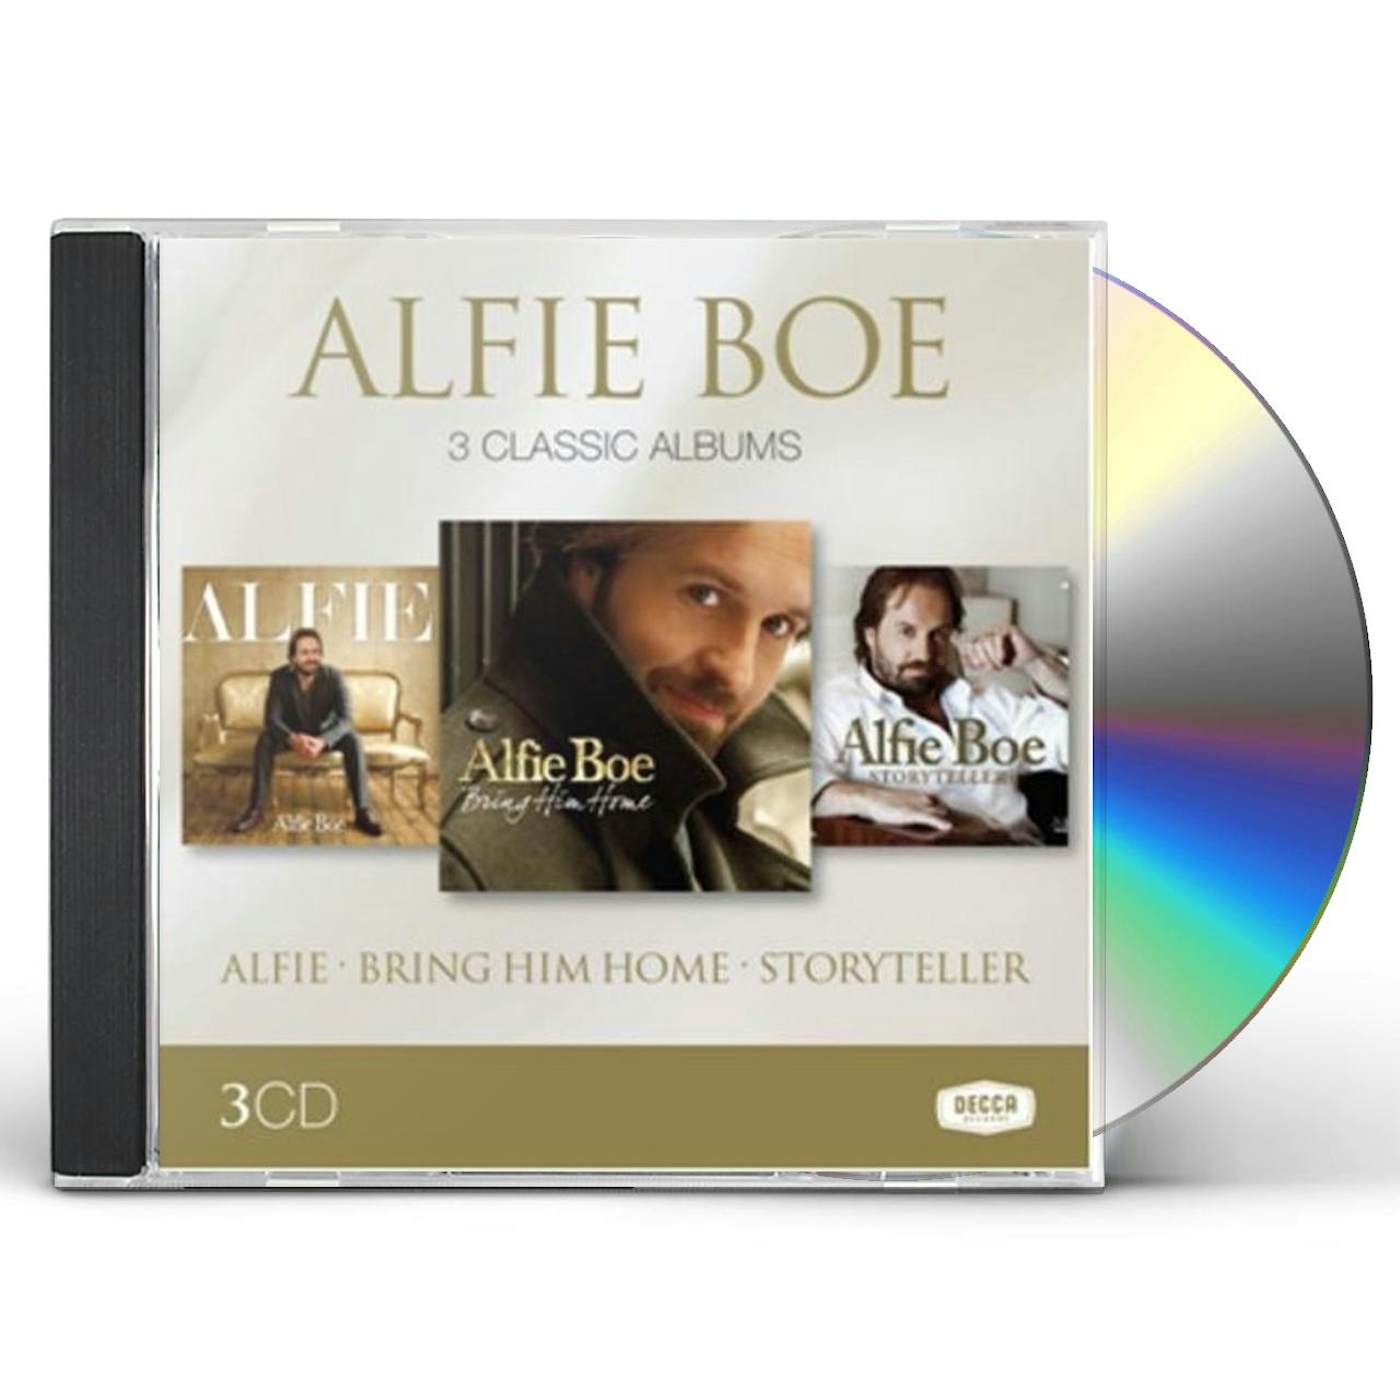 ALFIE BOE: 3 CLASSIC ALBUMS CD